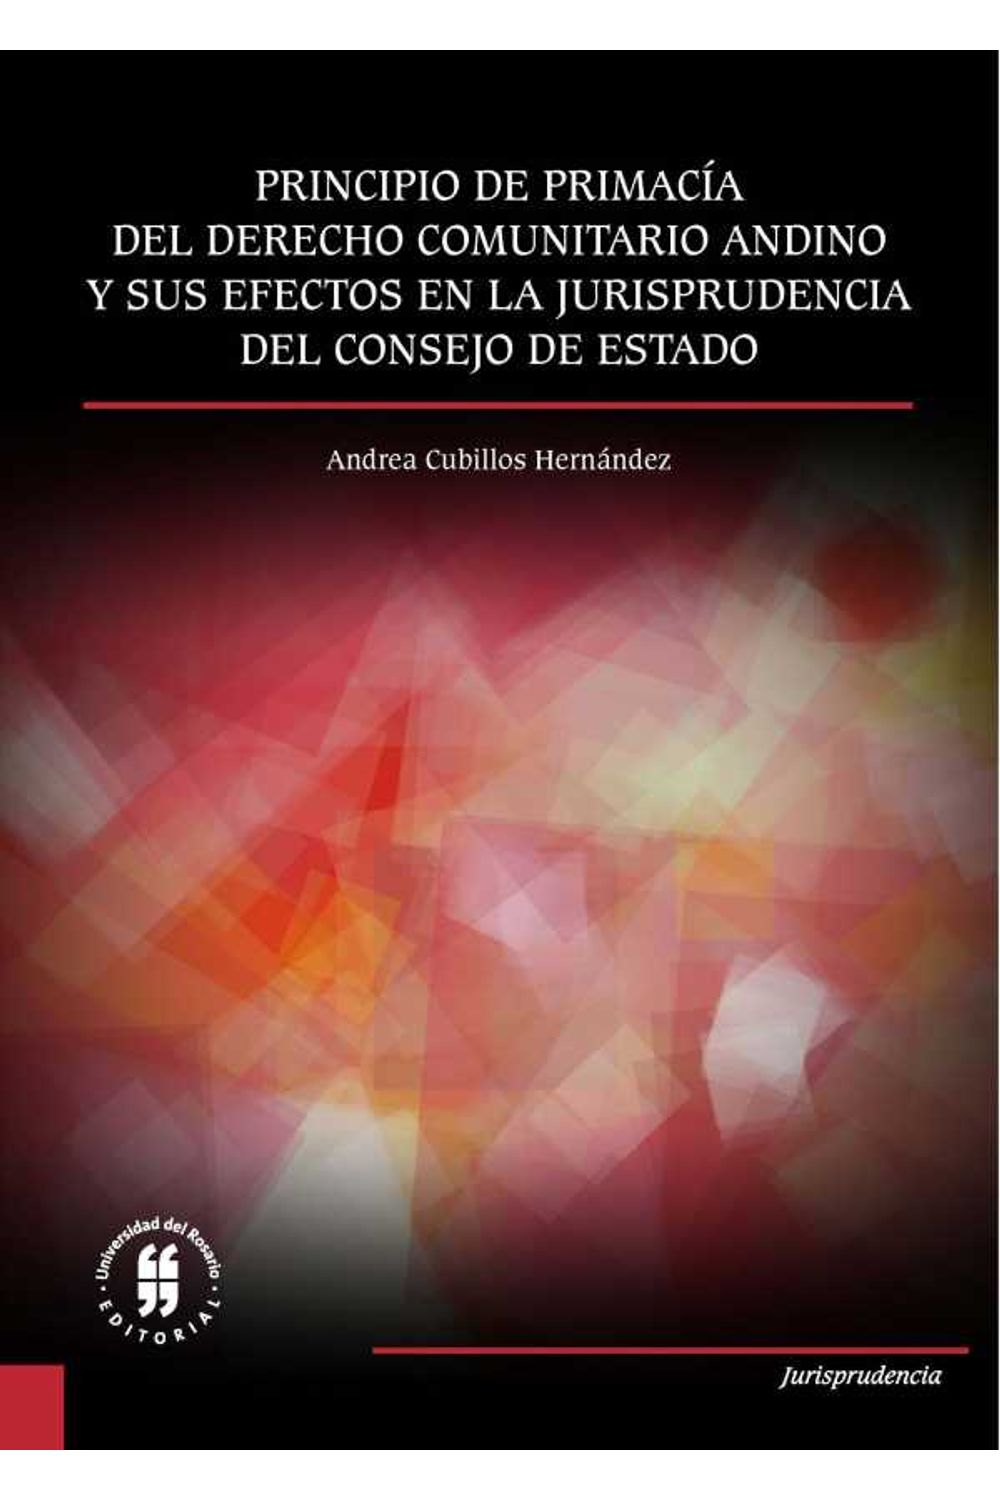 bw-principio-de-primaciacutea-del-derecho-comunitario-andino-editorial-universidad-del-rosario-9789587842470